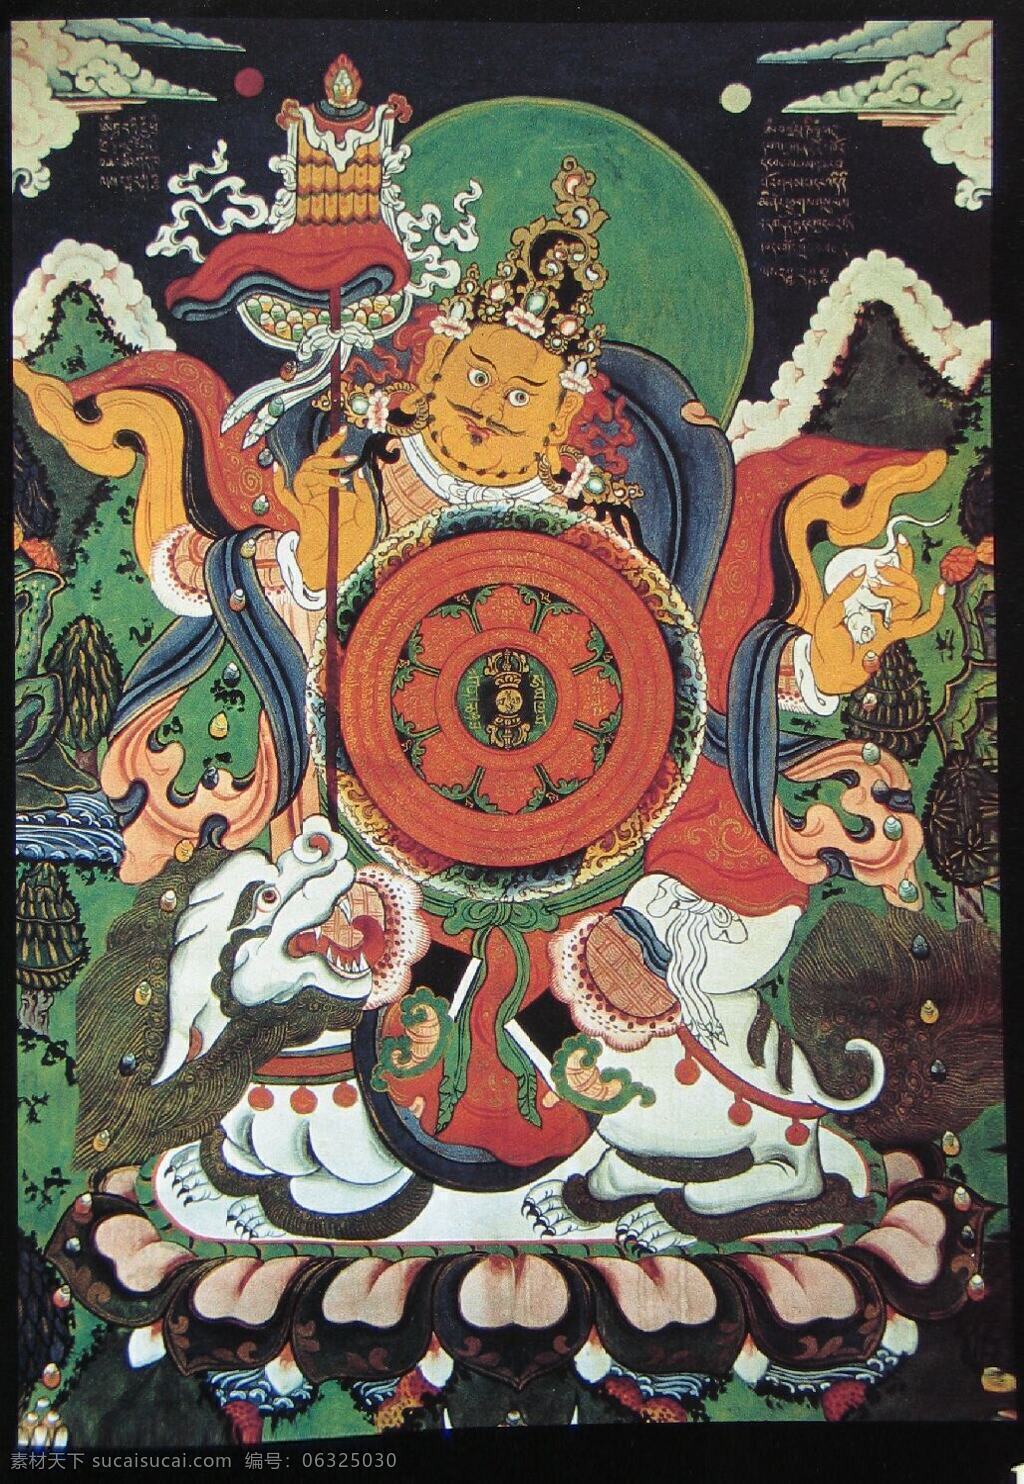 财宝天王 佛 佛教 财神 密宗 尼泊尔 唐卡 宗教信仰 文化艺术